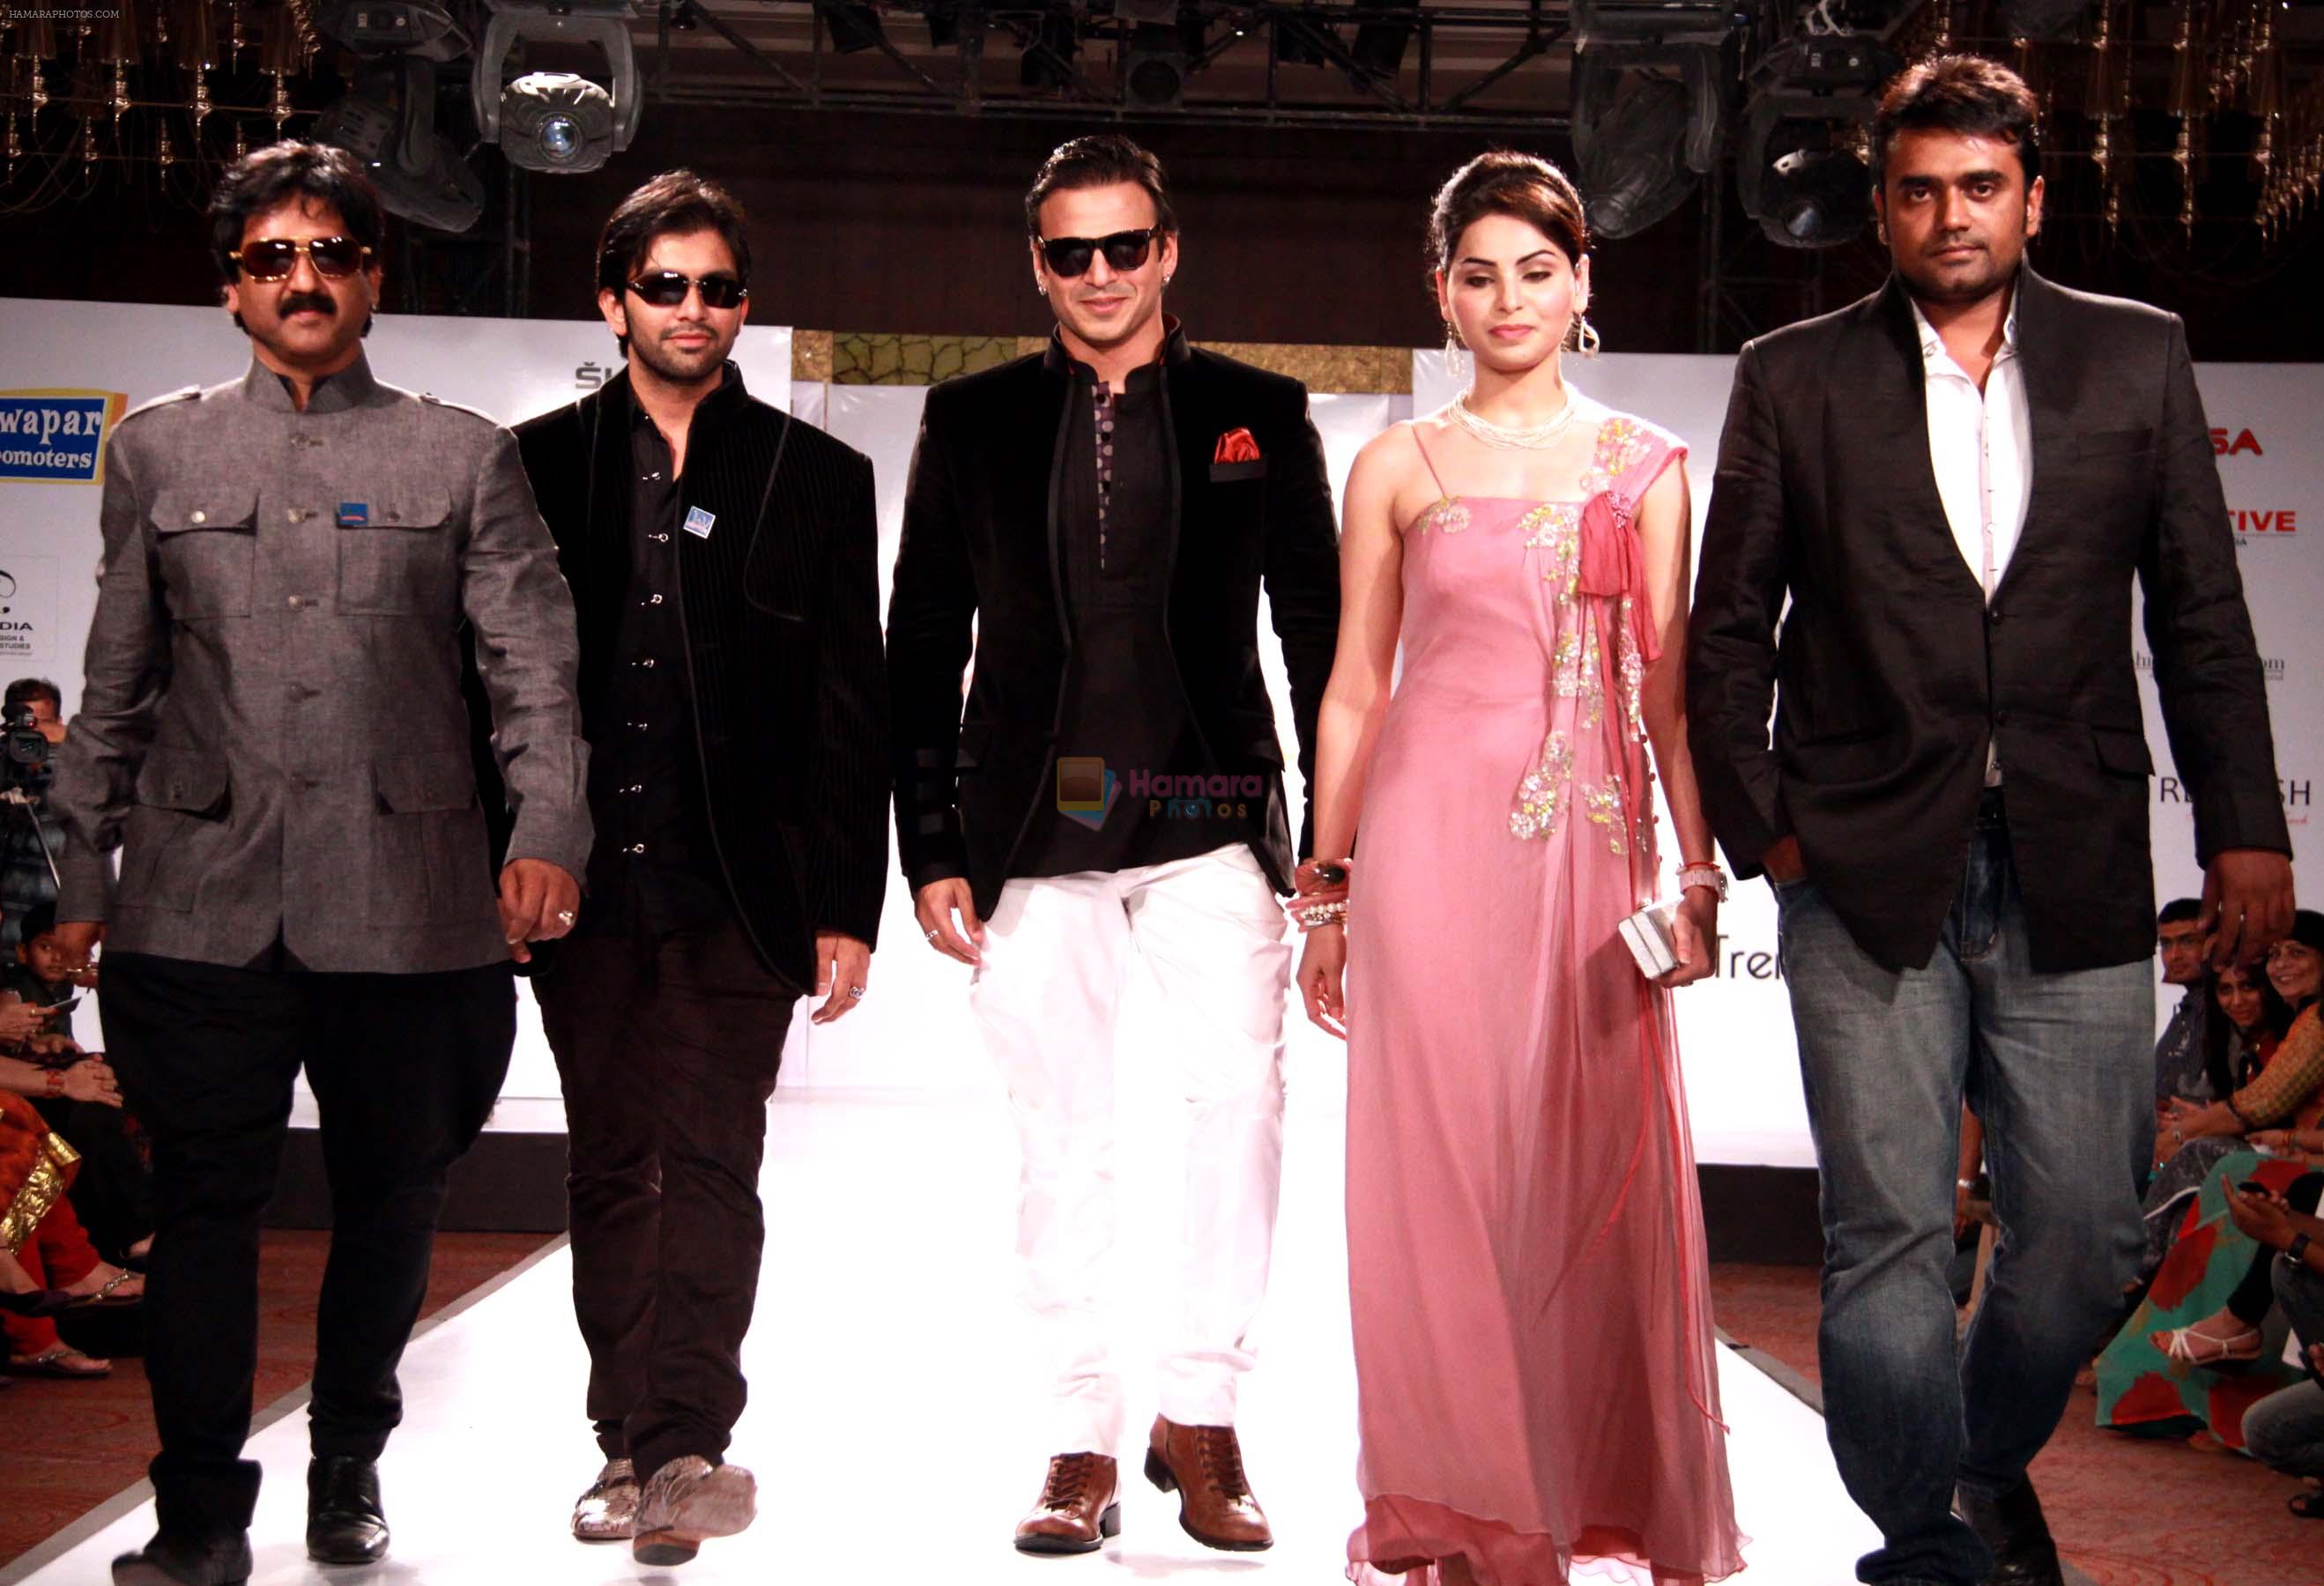 shishupal singh,sharad patel,vivek oberoi,shalika & rahul at day one of Rajasthan Fashion week at Marriott in Jaipur on 24th May 2012